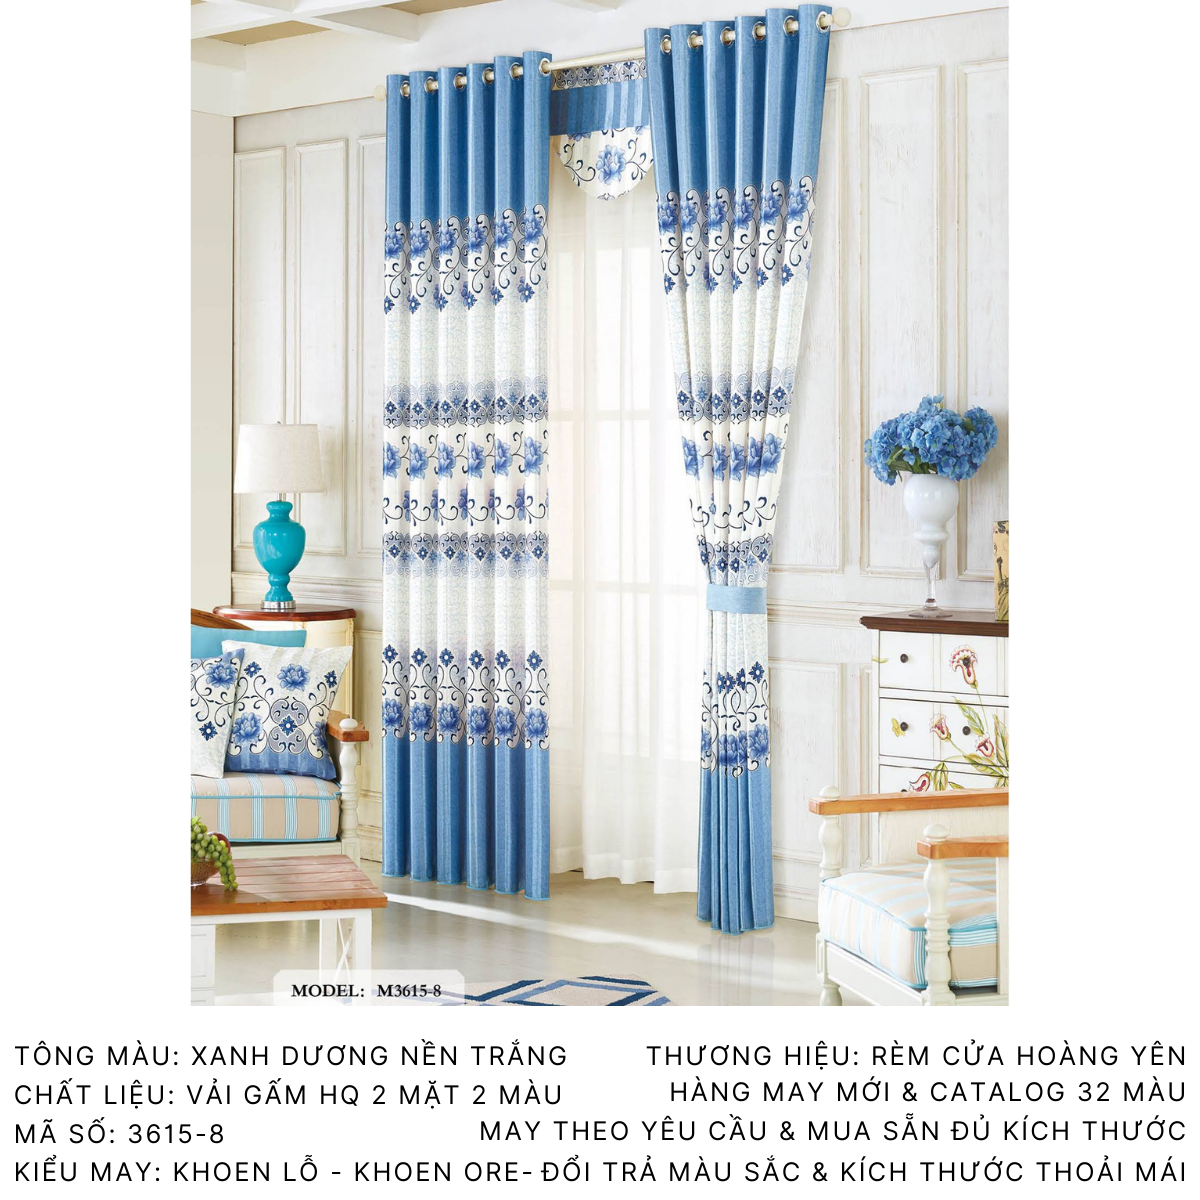 Bạn đang tìm kiếm một loại rèm cửa sổ màu xanh da trời để làm mới không gian trong phòng khách của bạn? Chất liệu bền đẹp và dễ dàng vệ sinh. Hãy xem hình ảnh liên quan để lựa chọn giải pháp phù hợp!